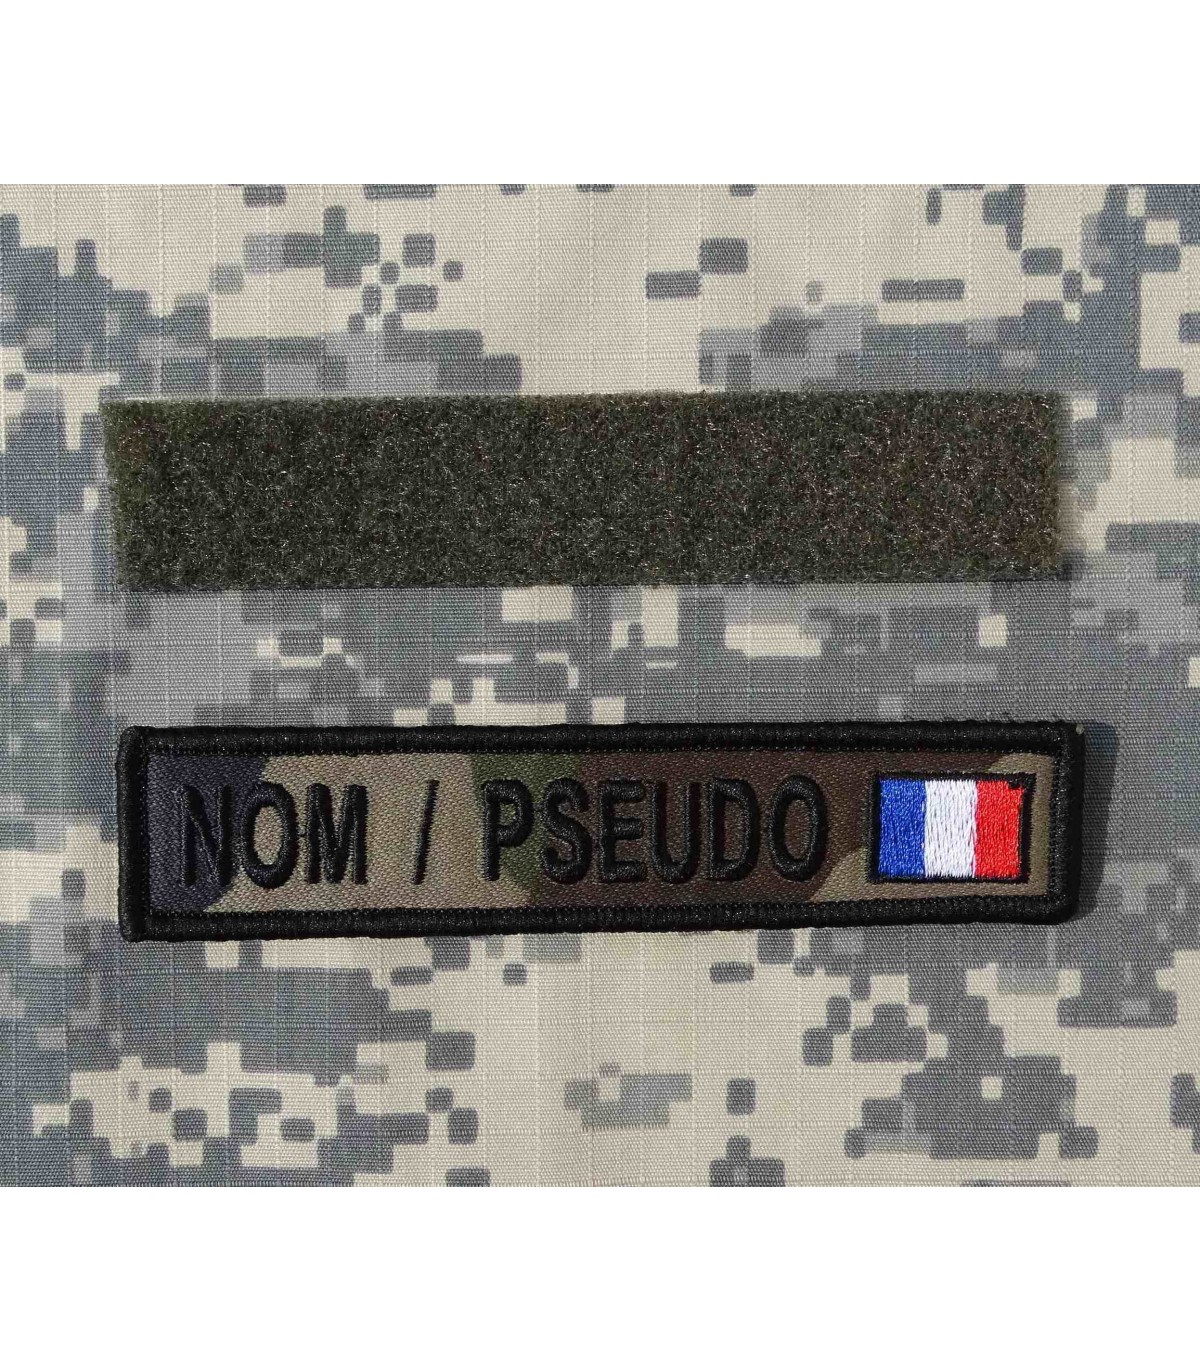 BANDE PATRONYMIQUE KAKI avec drapeau France (par 3) ( frais de